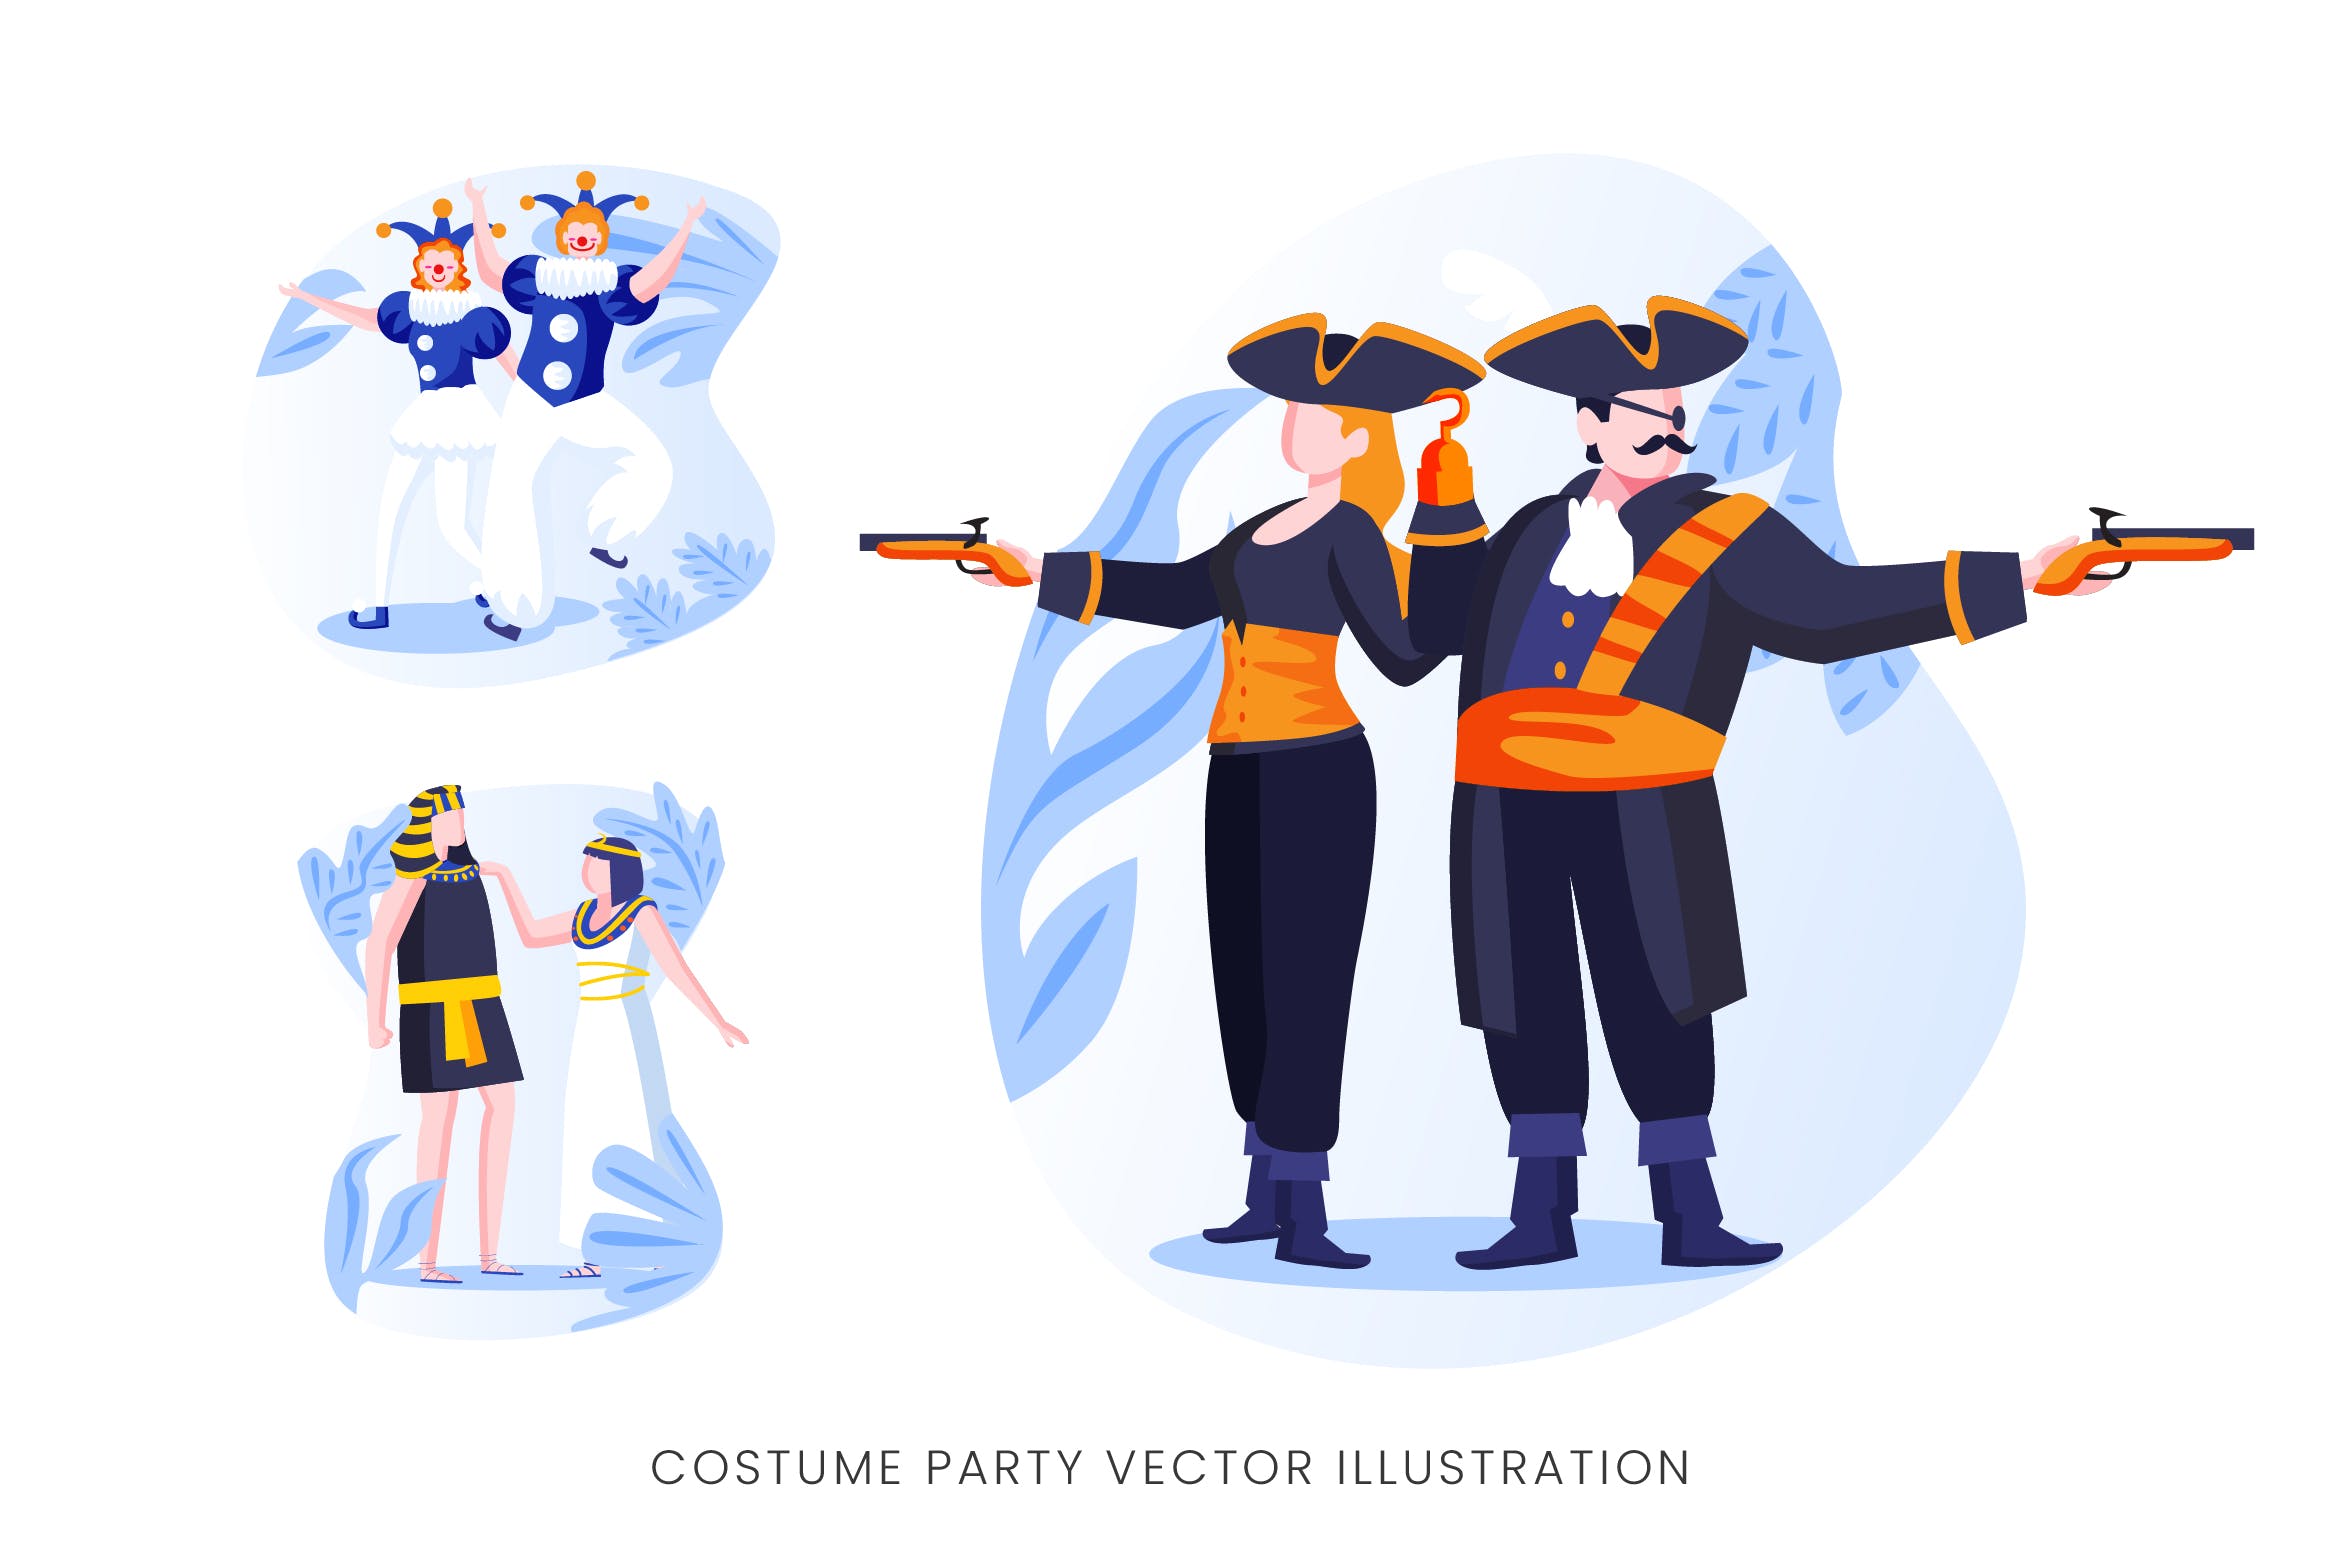 服装Cosplay派对人物形象矢量手绘非凡图库精选设计素材 Costume Party Vector Character Set插图